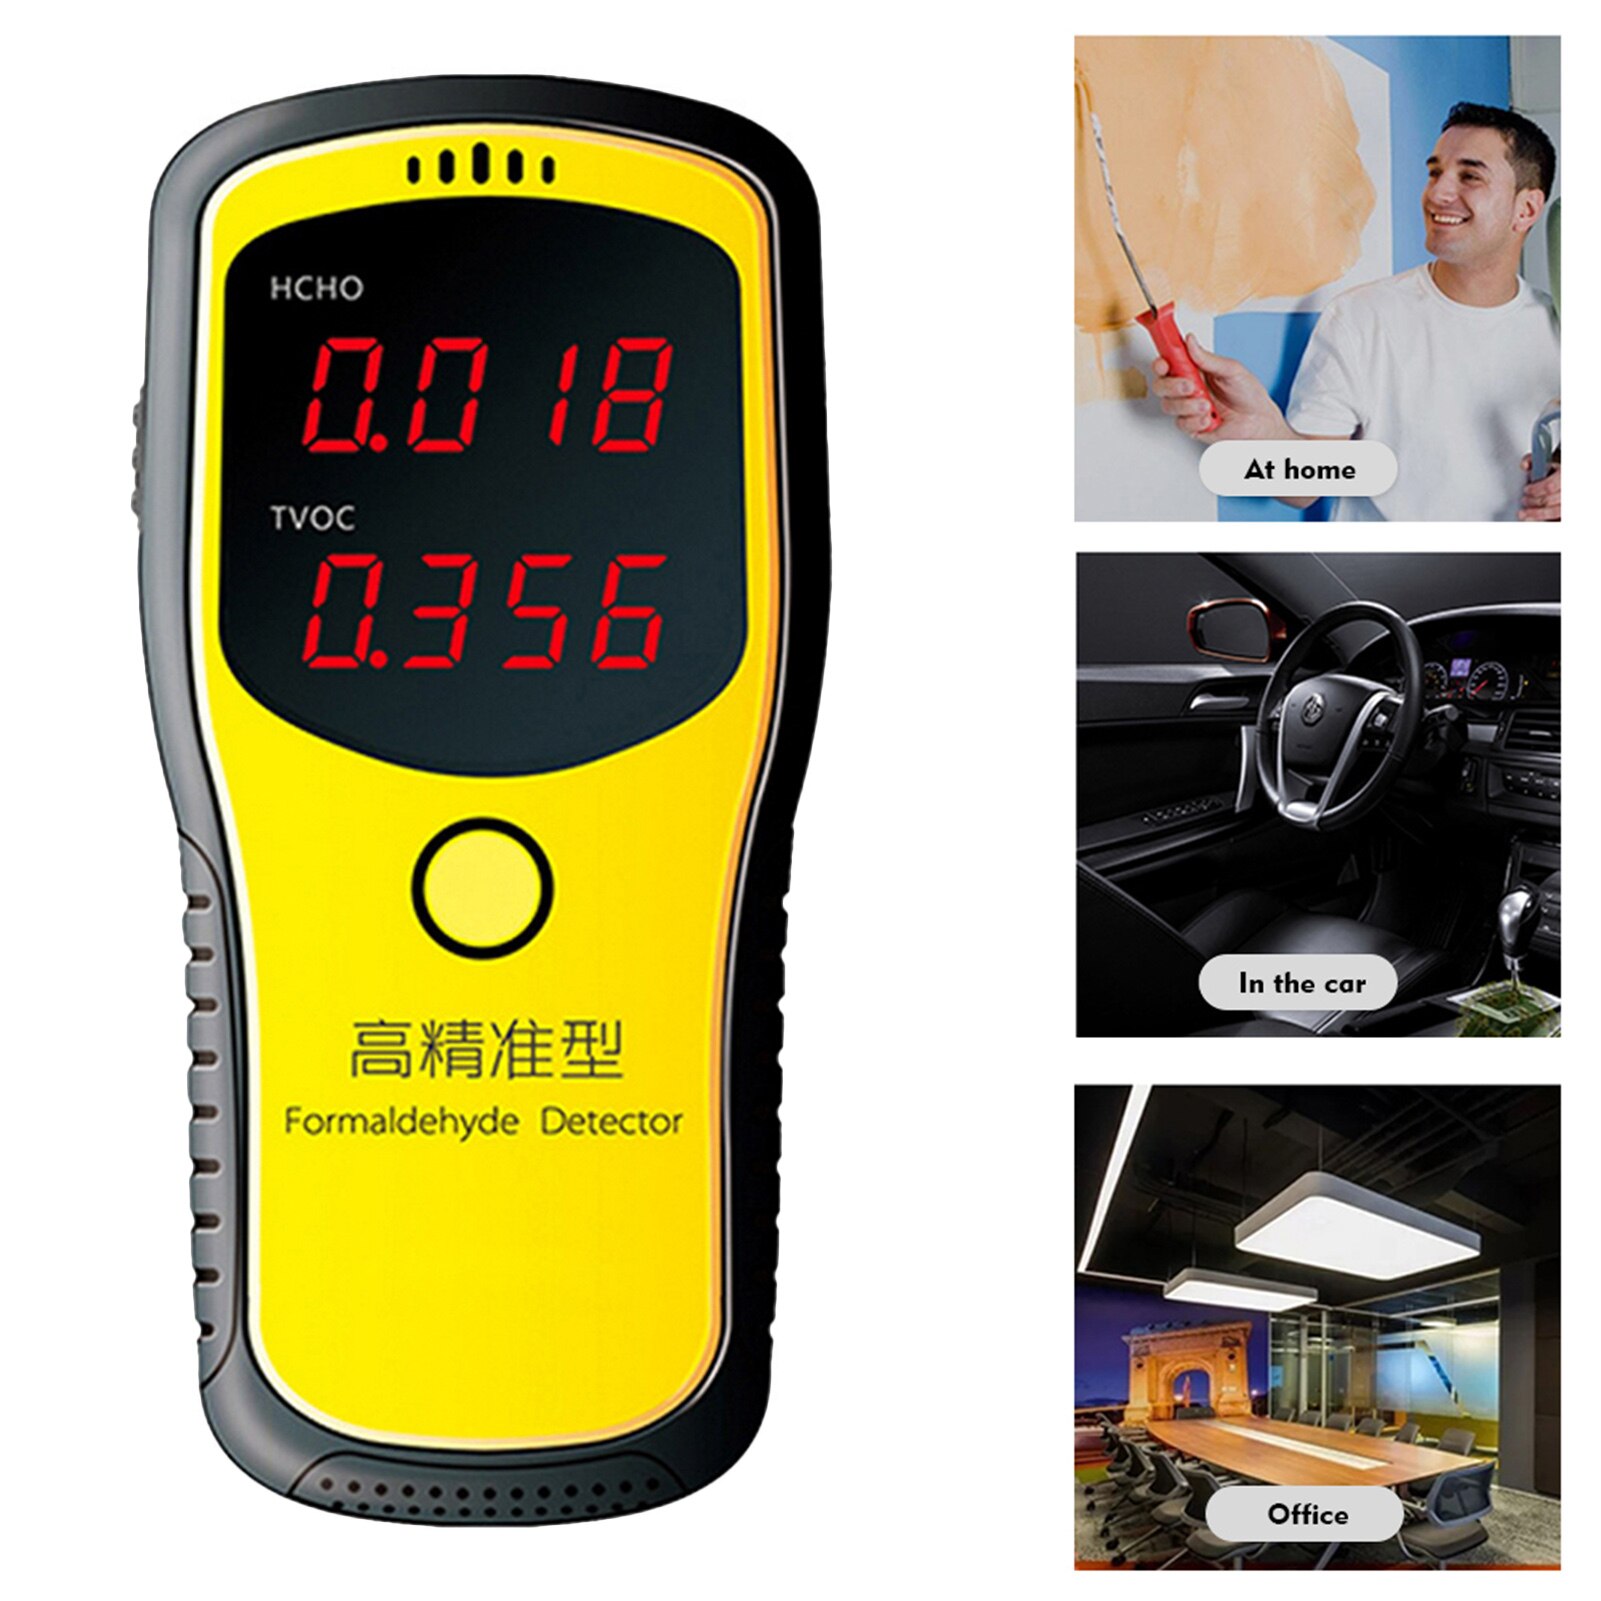 Formaldehyd  co2 hcho tvoc led digitalt display meter tester mini  co2 luftdetektor gasanalysator beskyttet lufttester